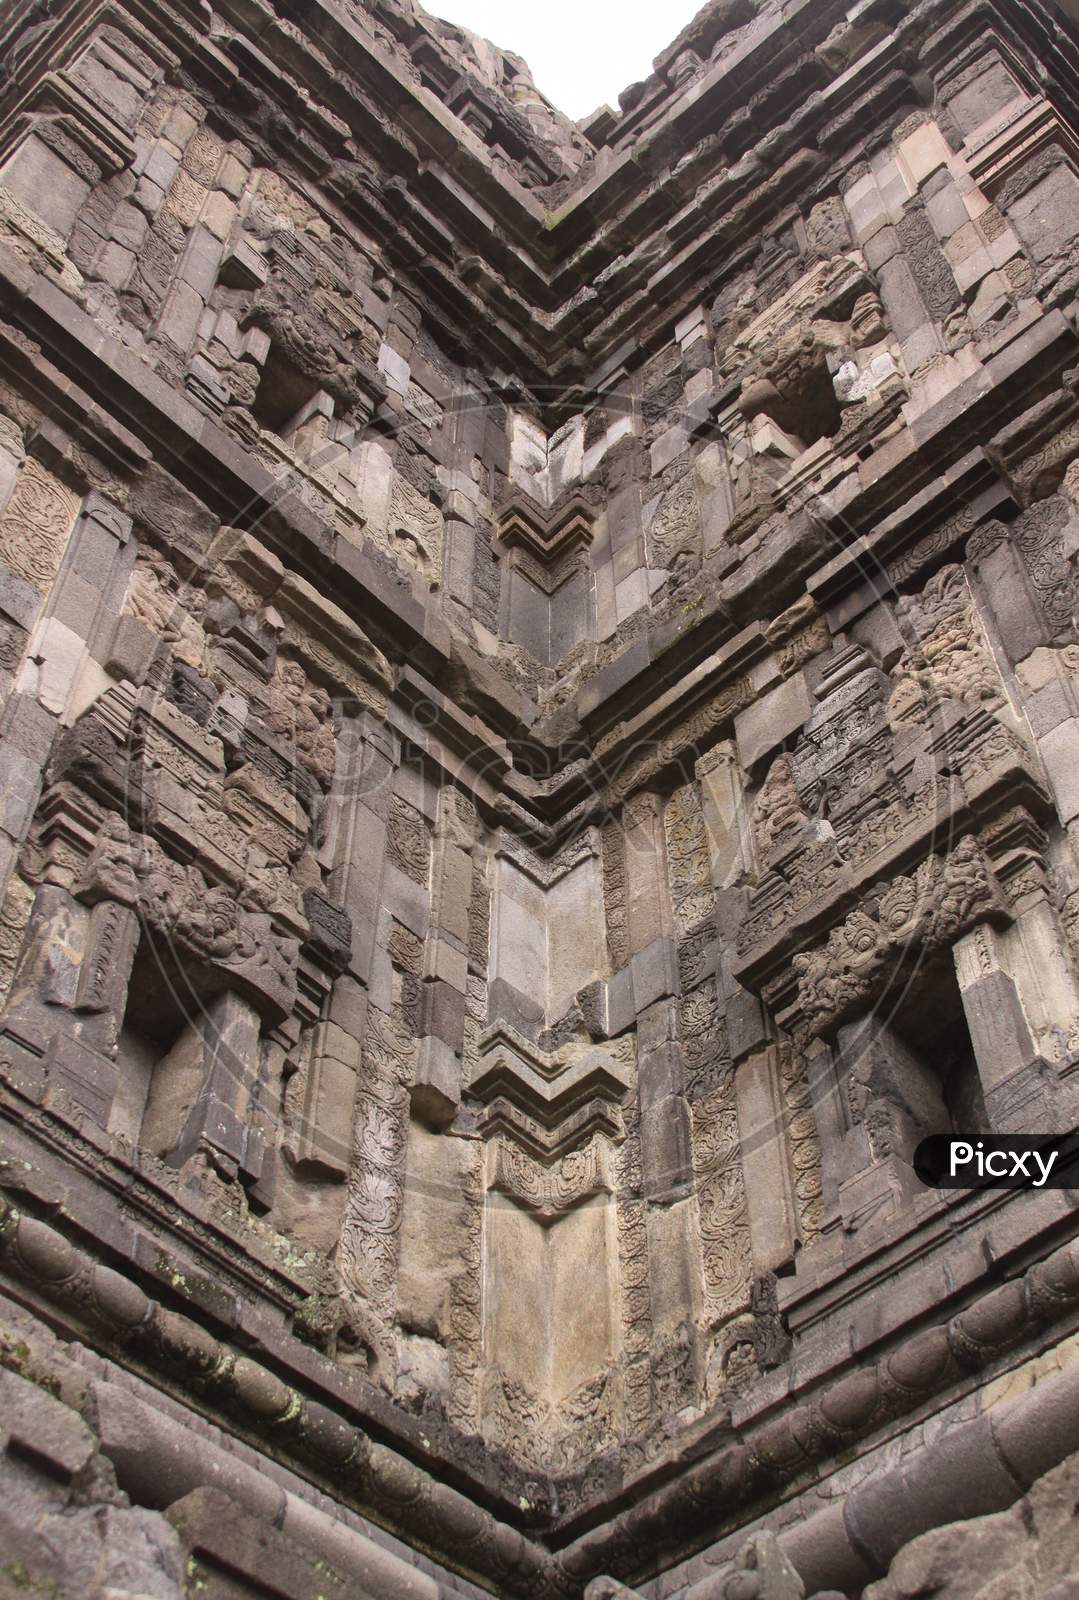 Mirror-Like Corner Details Of Tower At Prambanan